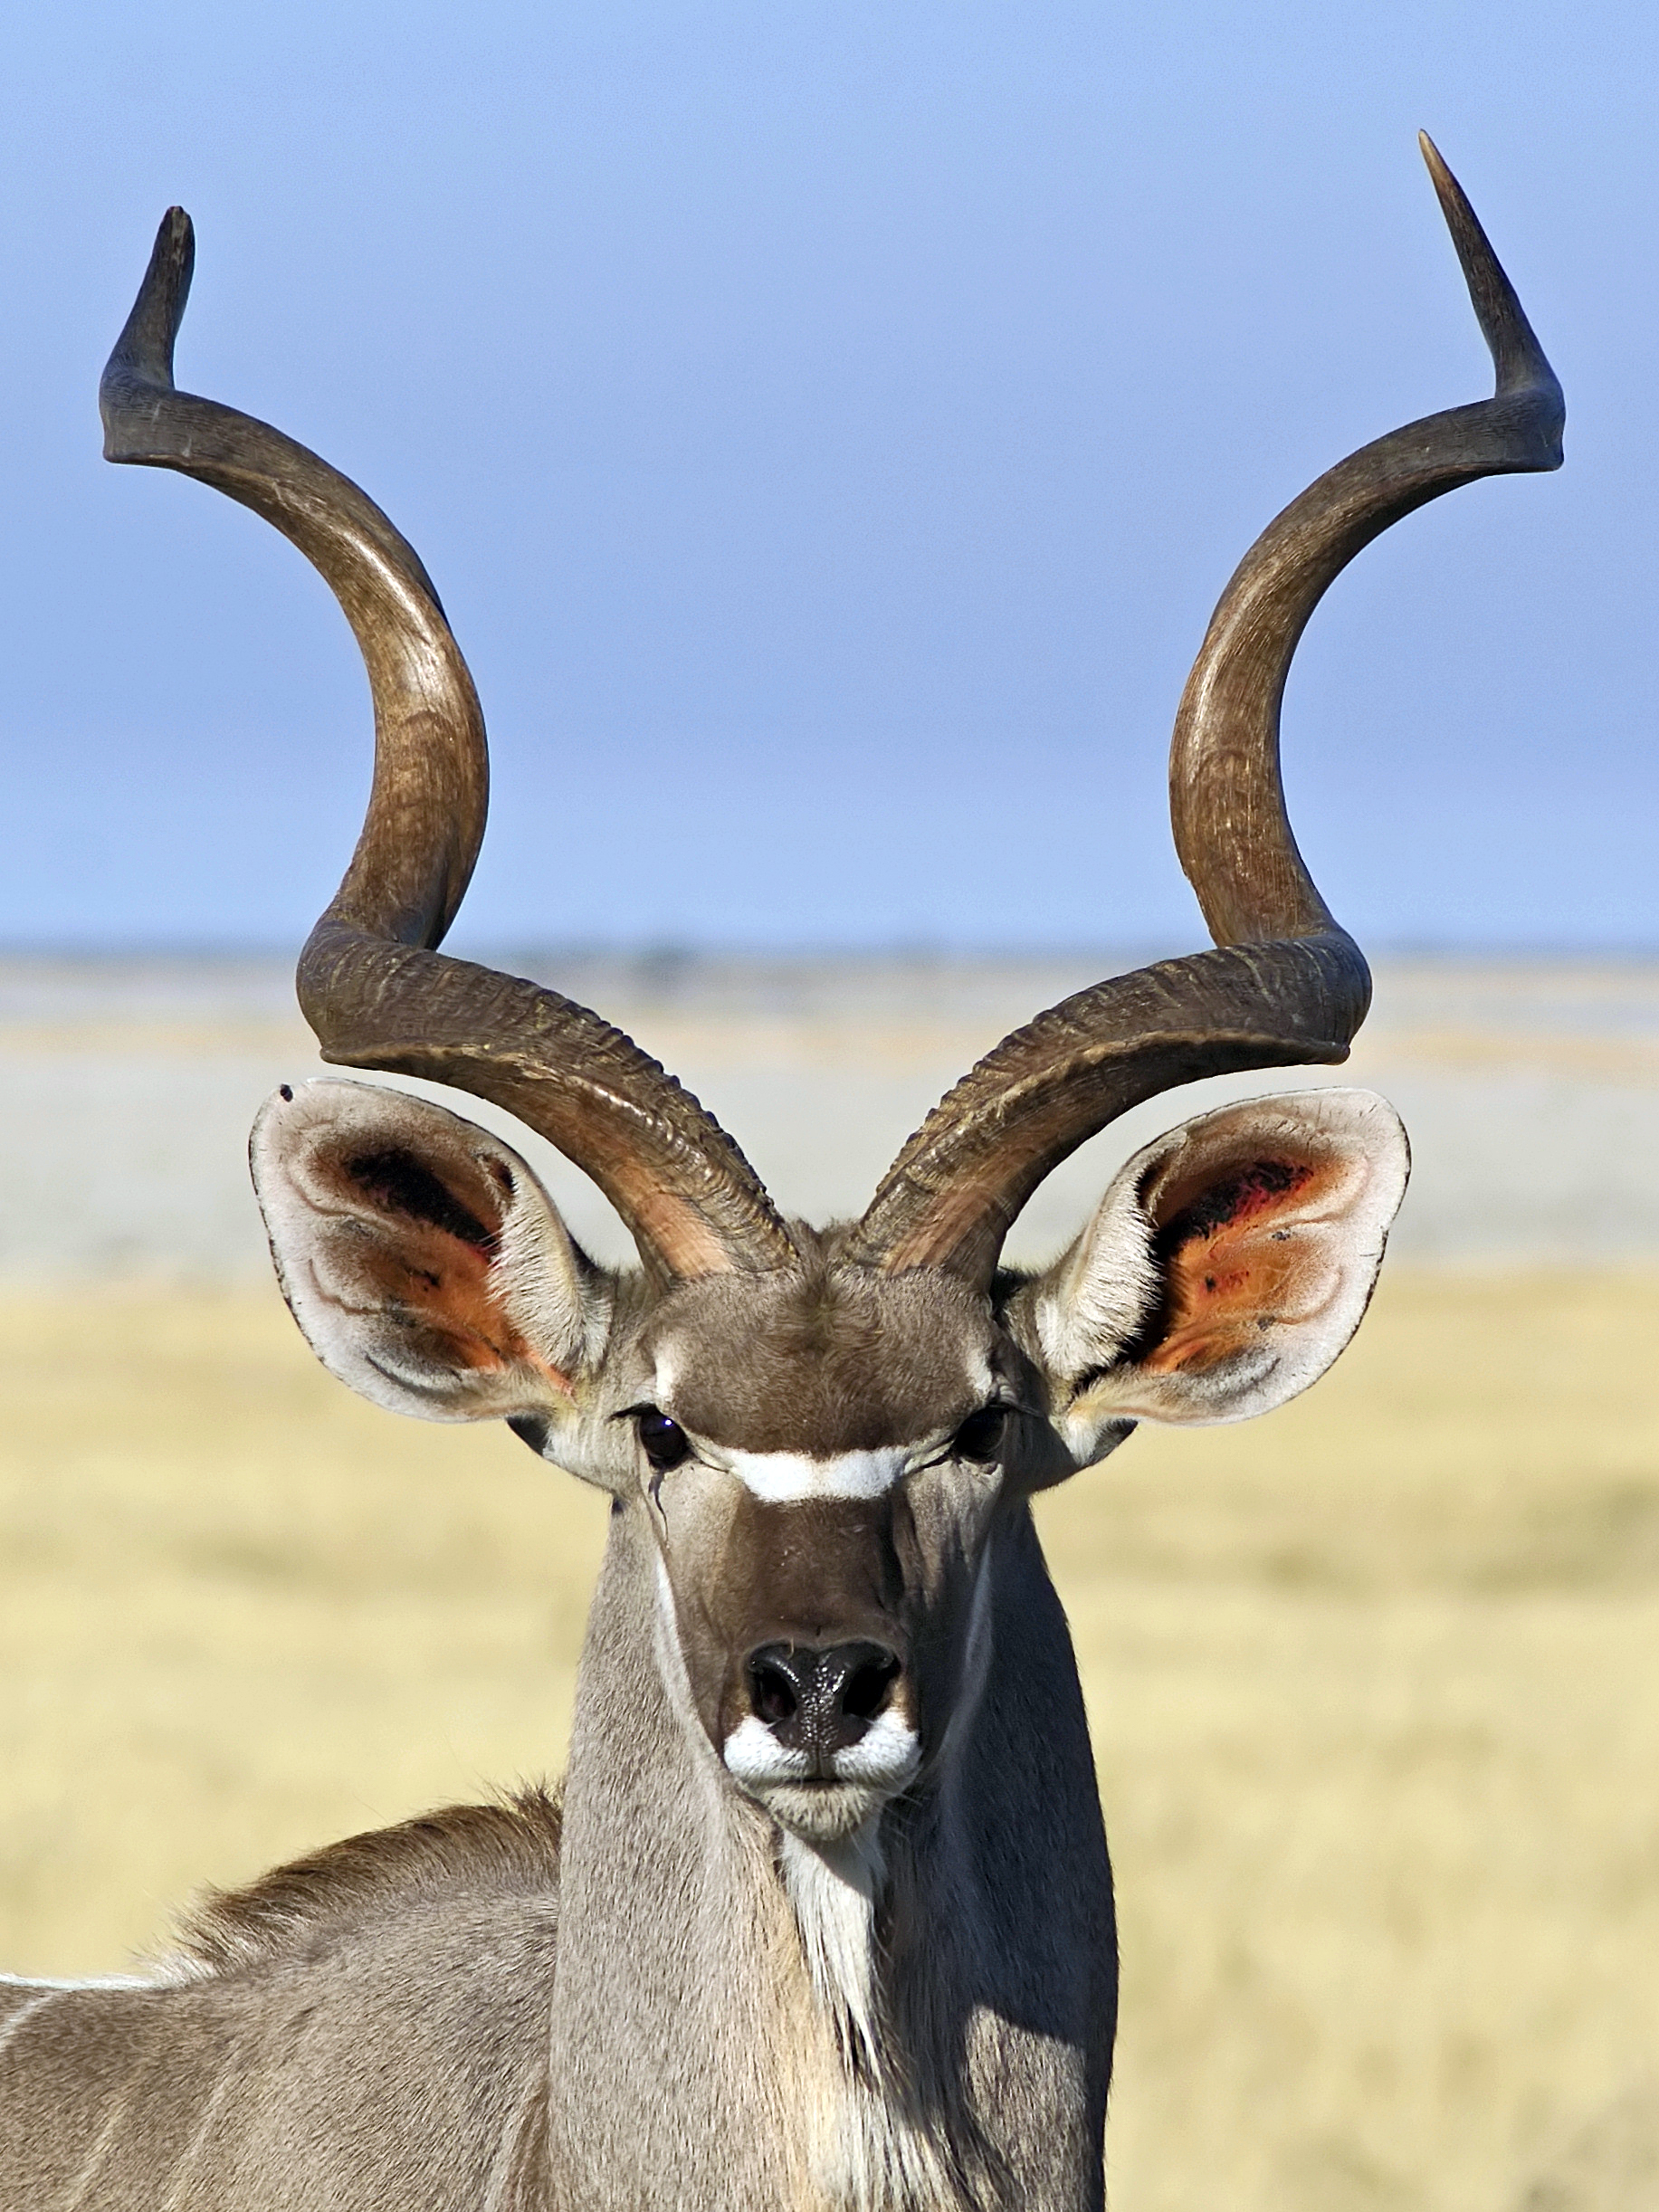 Wikipedia:Featured picture candidates/Greater kudu - Wikipedia